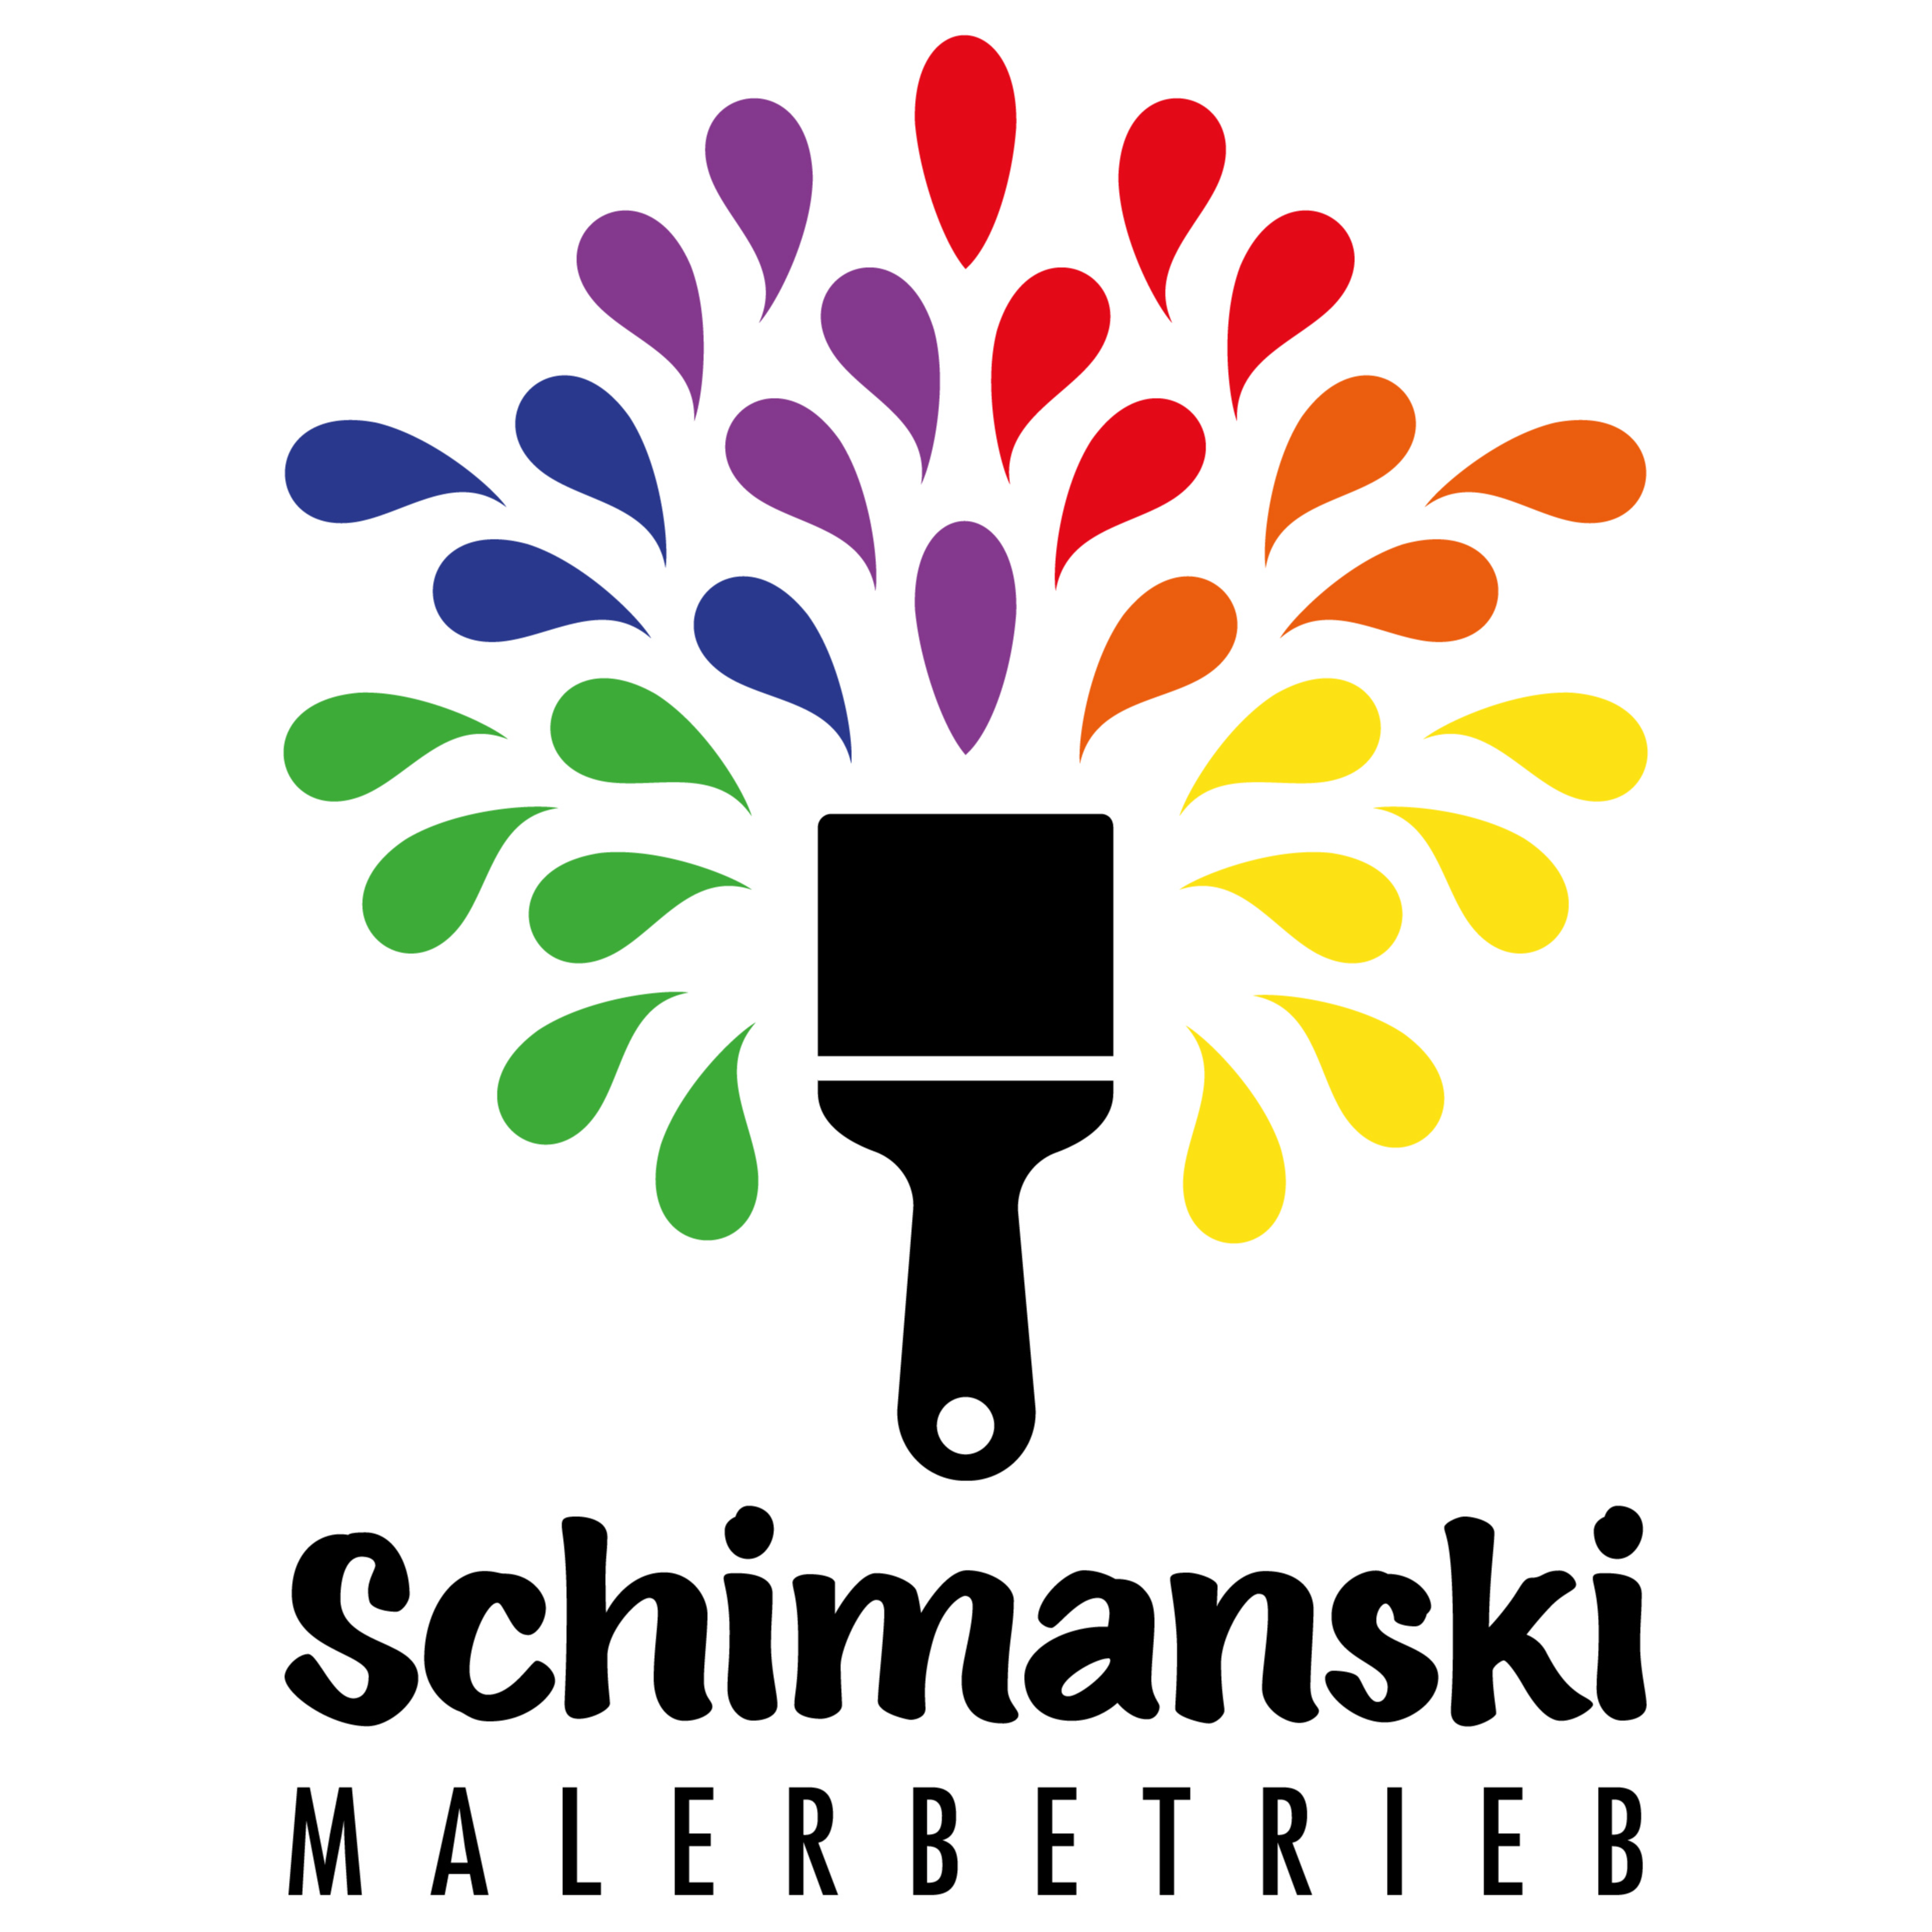 Malerbetrieb Schimanski in Drochtersen - Logo